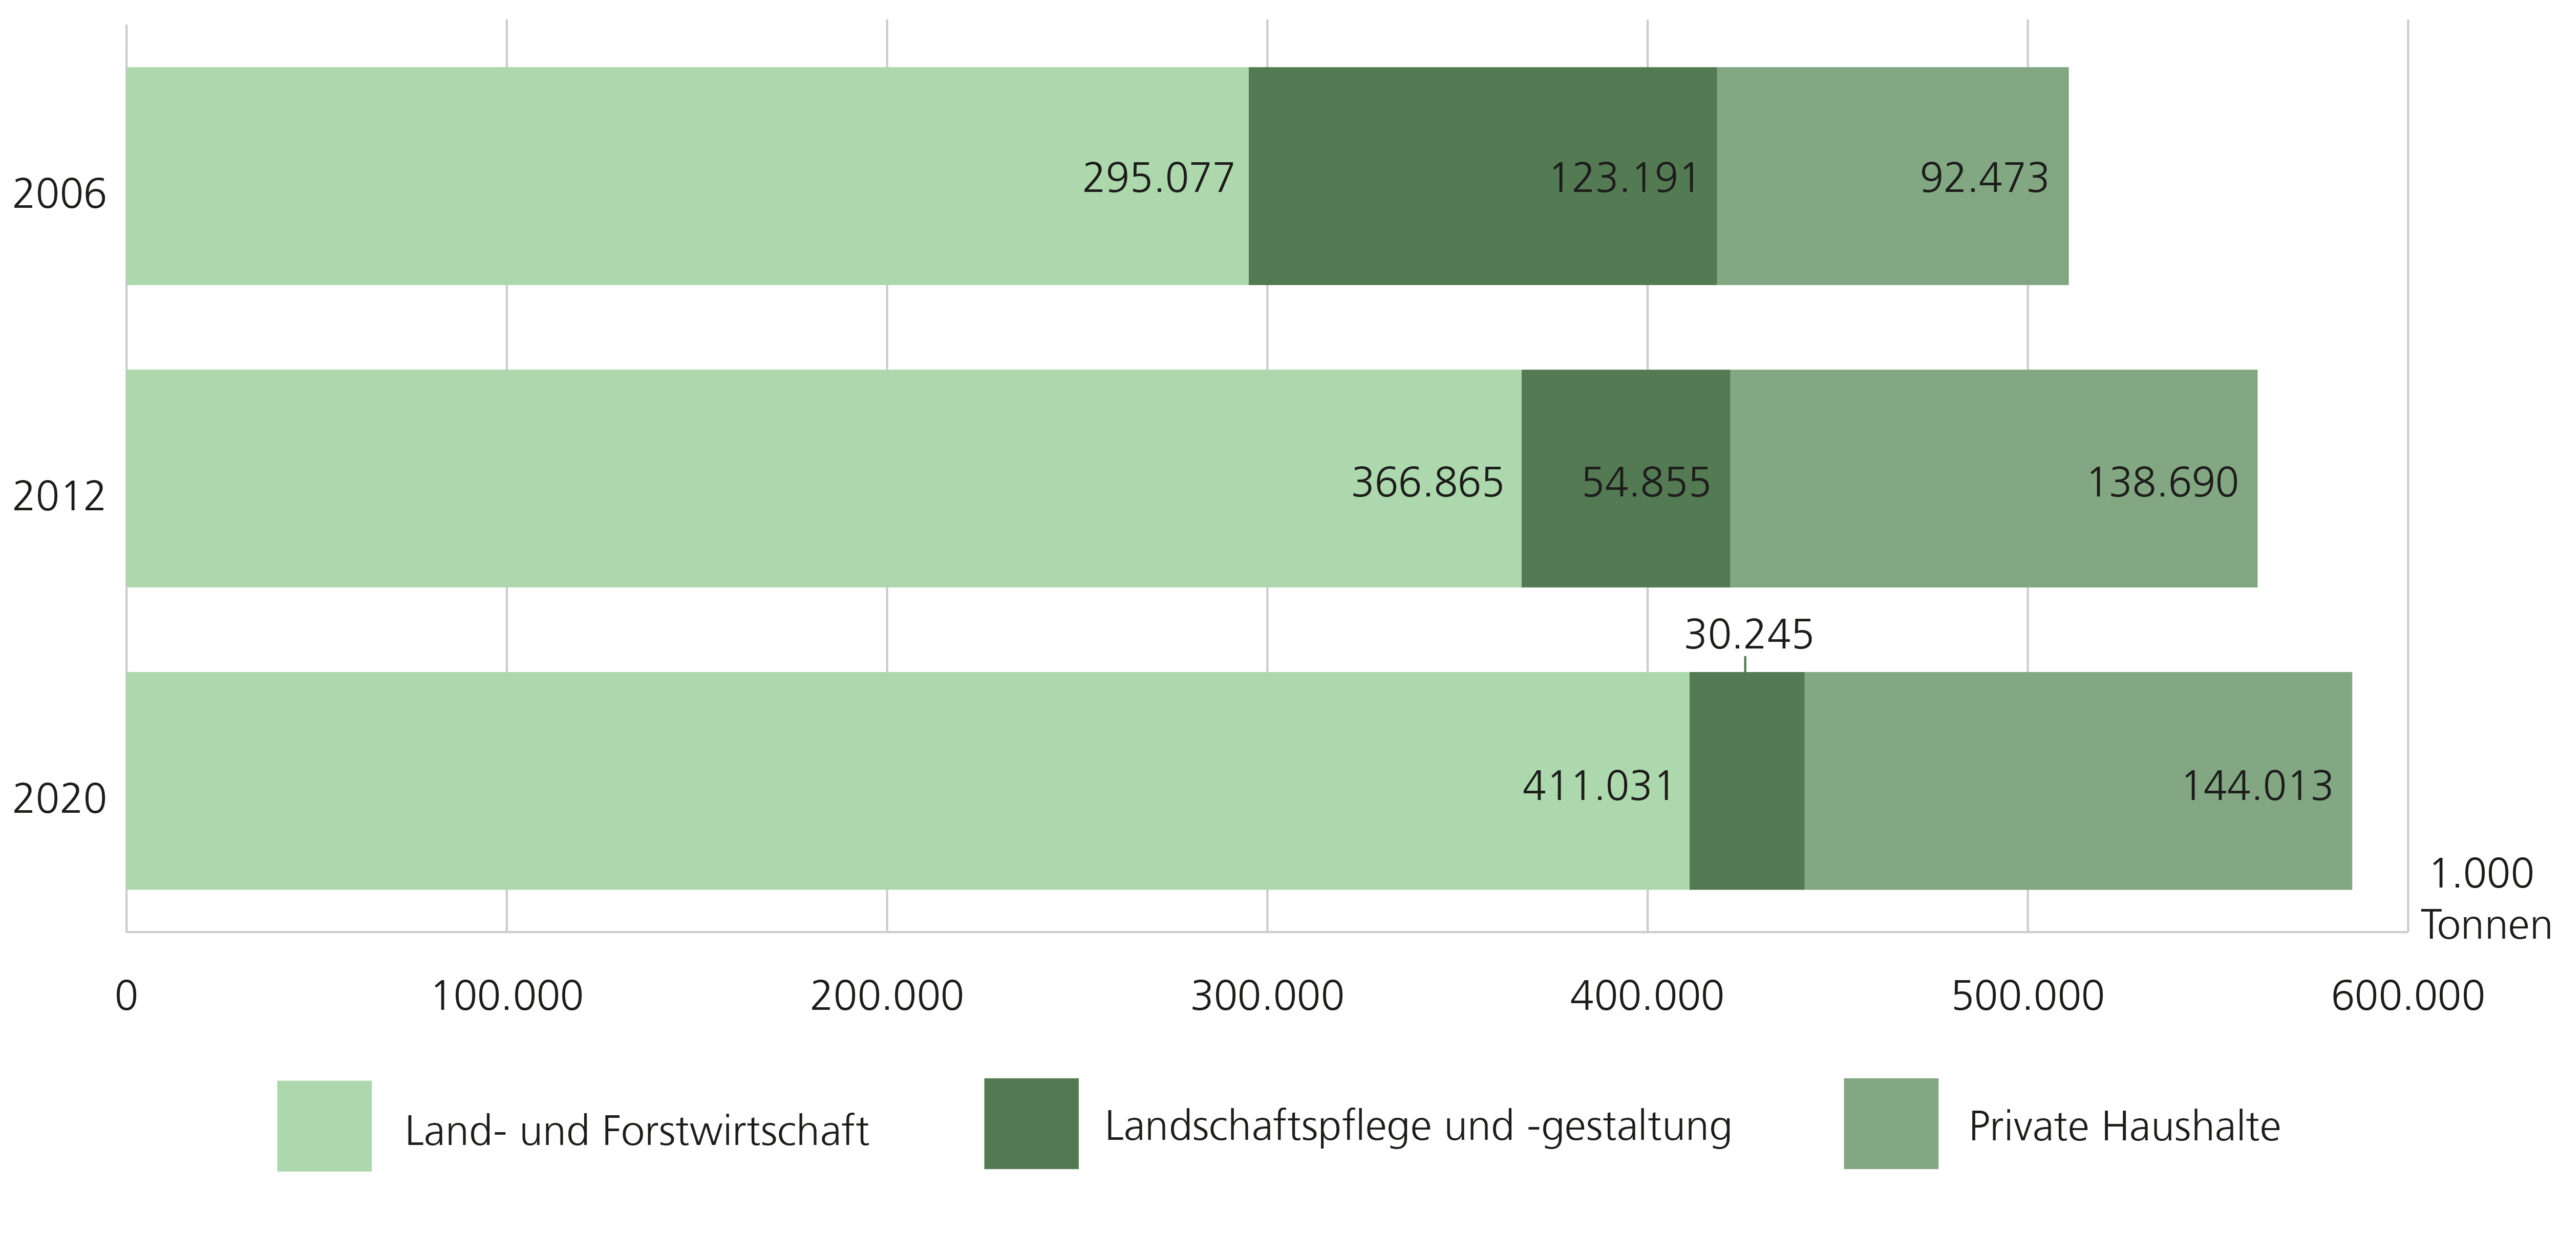 Verbleib erzeugter Komposte in Niedersachsen, Vergleich der Jahre 2006, 2012 und 2020. In allen drei Jahren verblieb der Großteil der erzeugten Komposte in der Land- und Forstwirtschaft, wobei der Wert mit den Jahren steigt. Im Jahr 2006 machten die privaten Haushalte den geringen Anteil aus; in den Jahren 2012 und 2020 war es die Landschaftspflege und -gestaltung. 